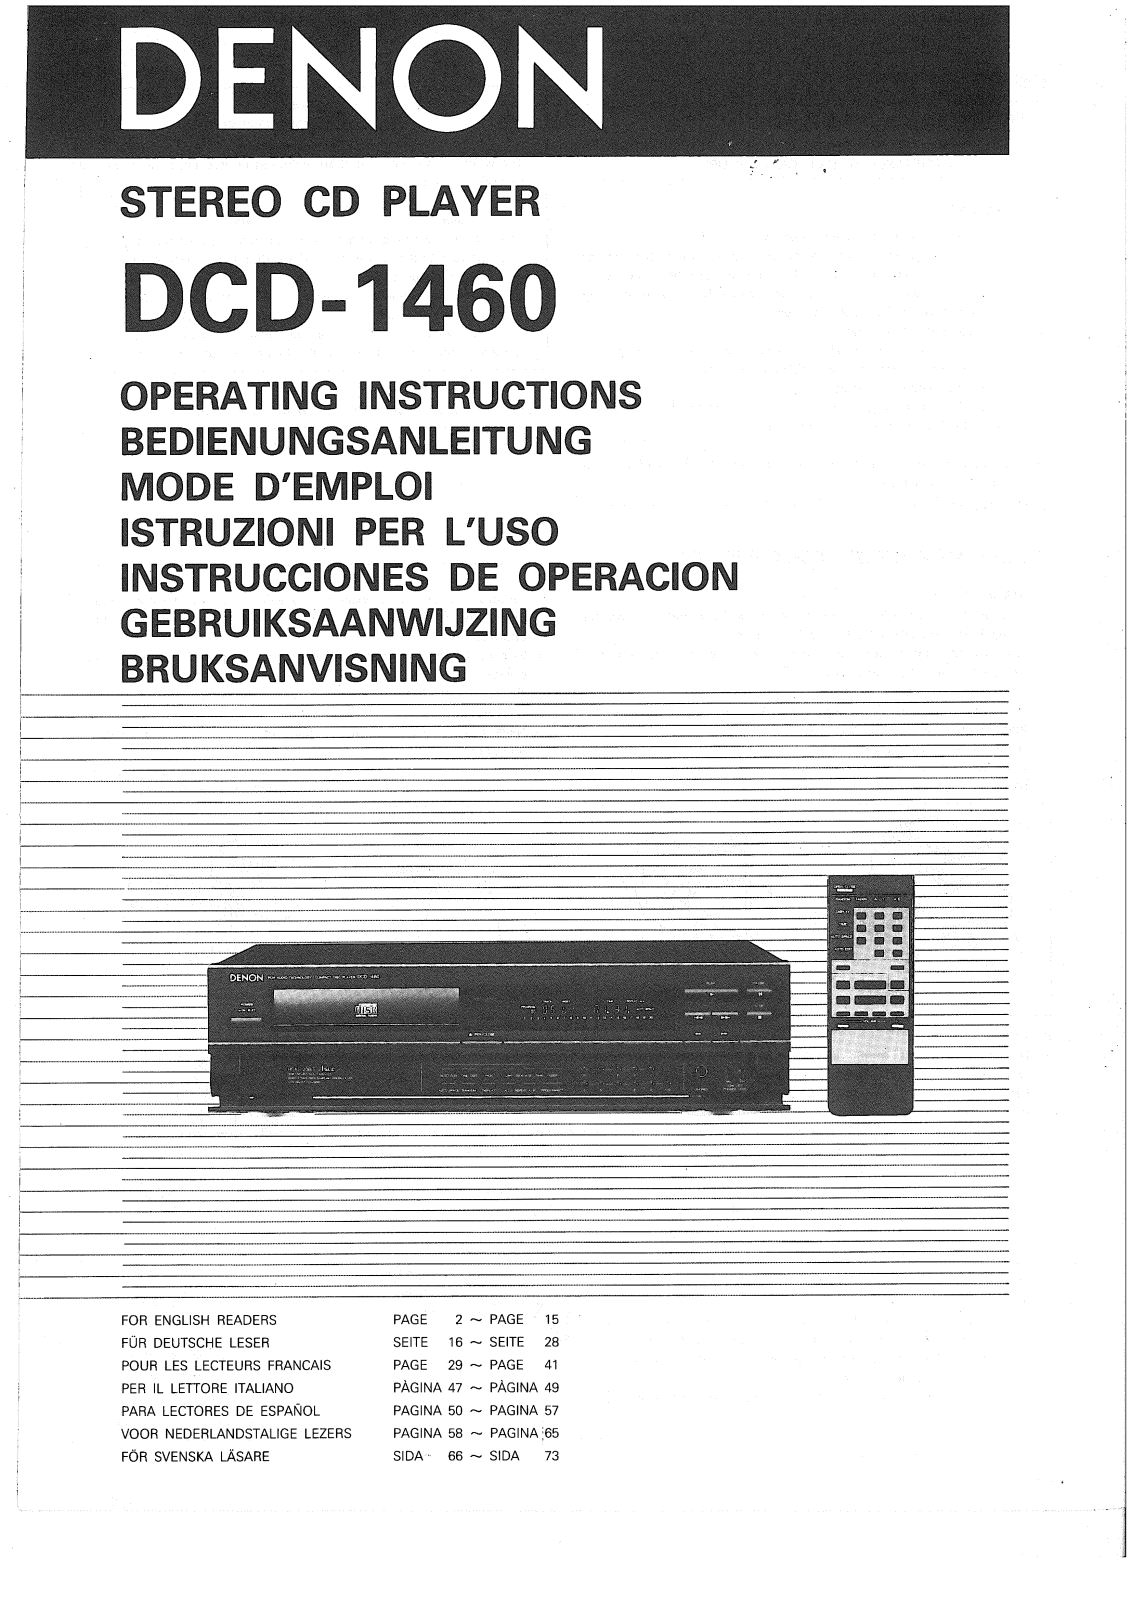 Denon DCD-1460 Owner's Manual